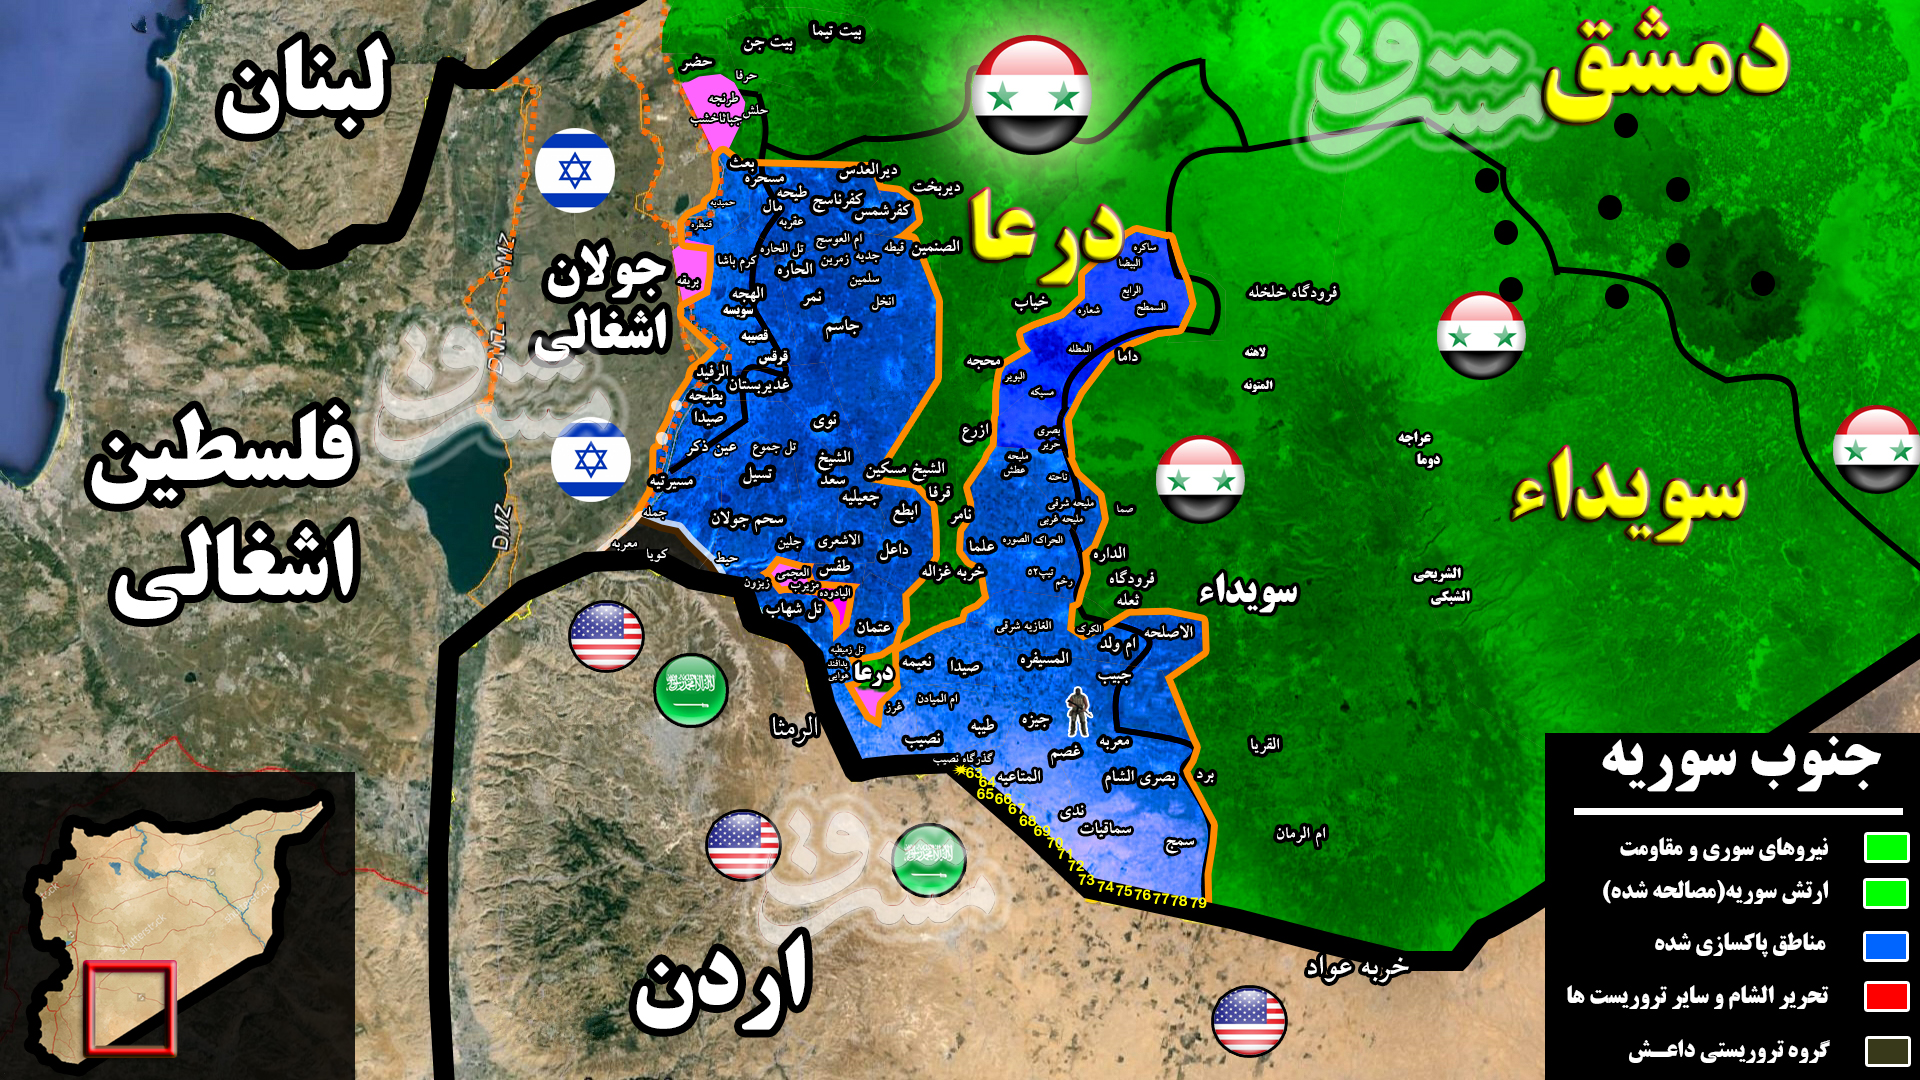 2304141 - آخرین تحولات میدانی جنوب سوریه؛ ۹۸ درصد استان درعا به کنترل نیروهای سوری درآمد + نقشه میدانی